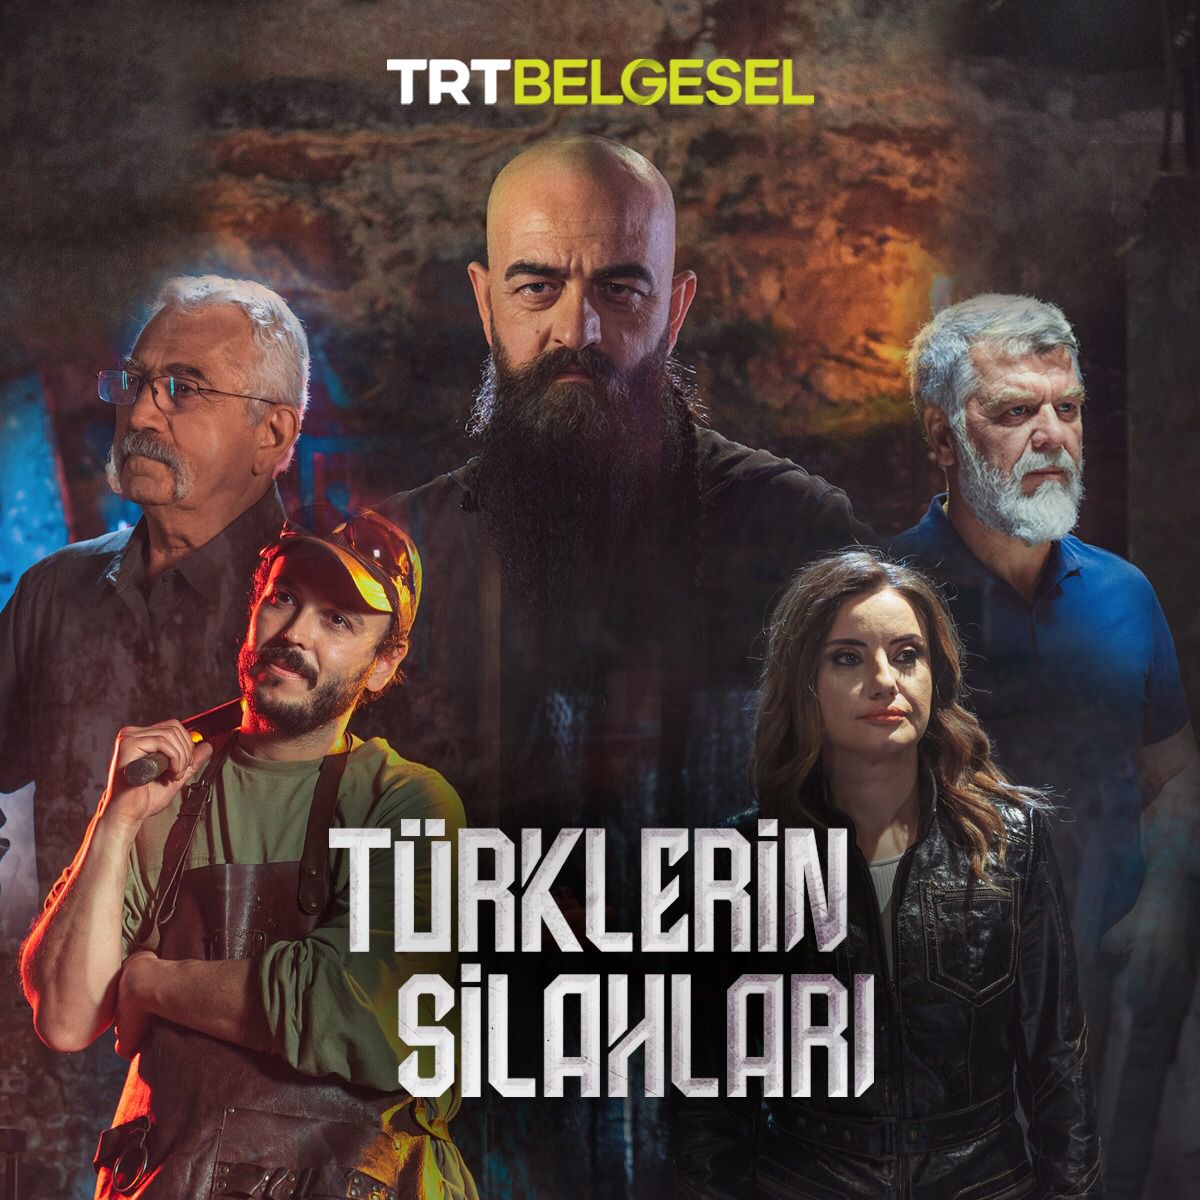 TÜRKLERİN SİLAHLARI belgesel izle türkçe dublaj